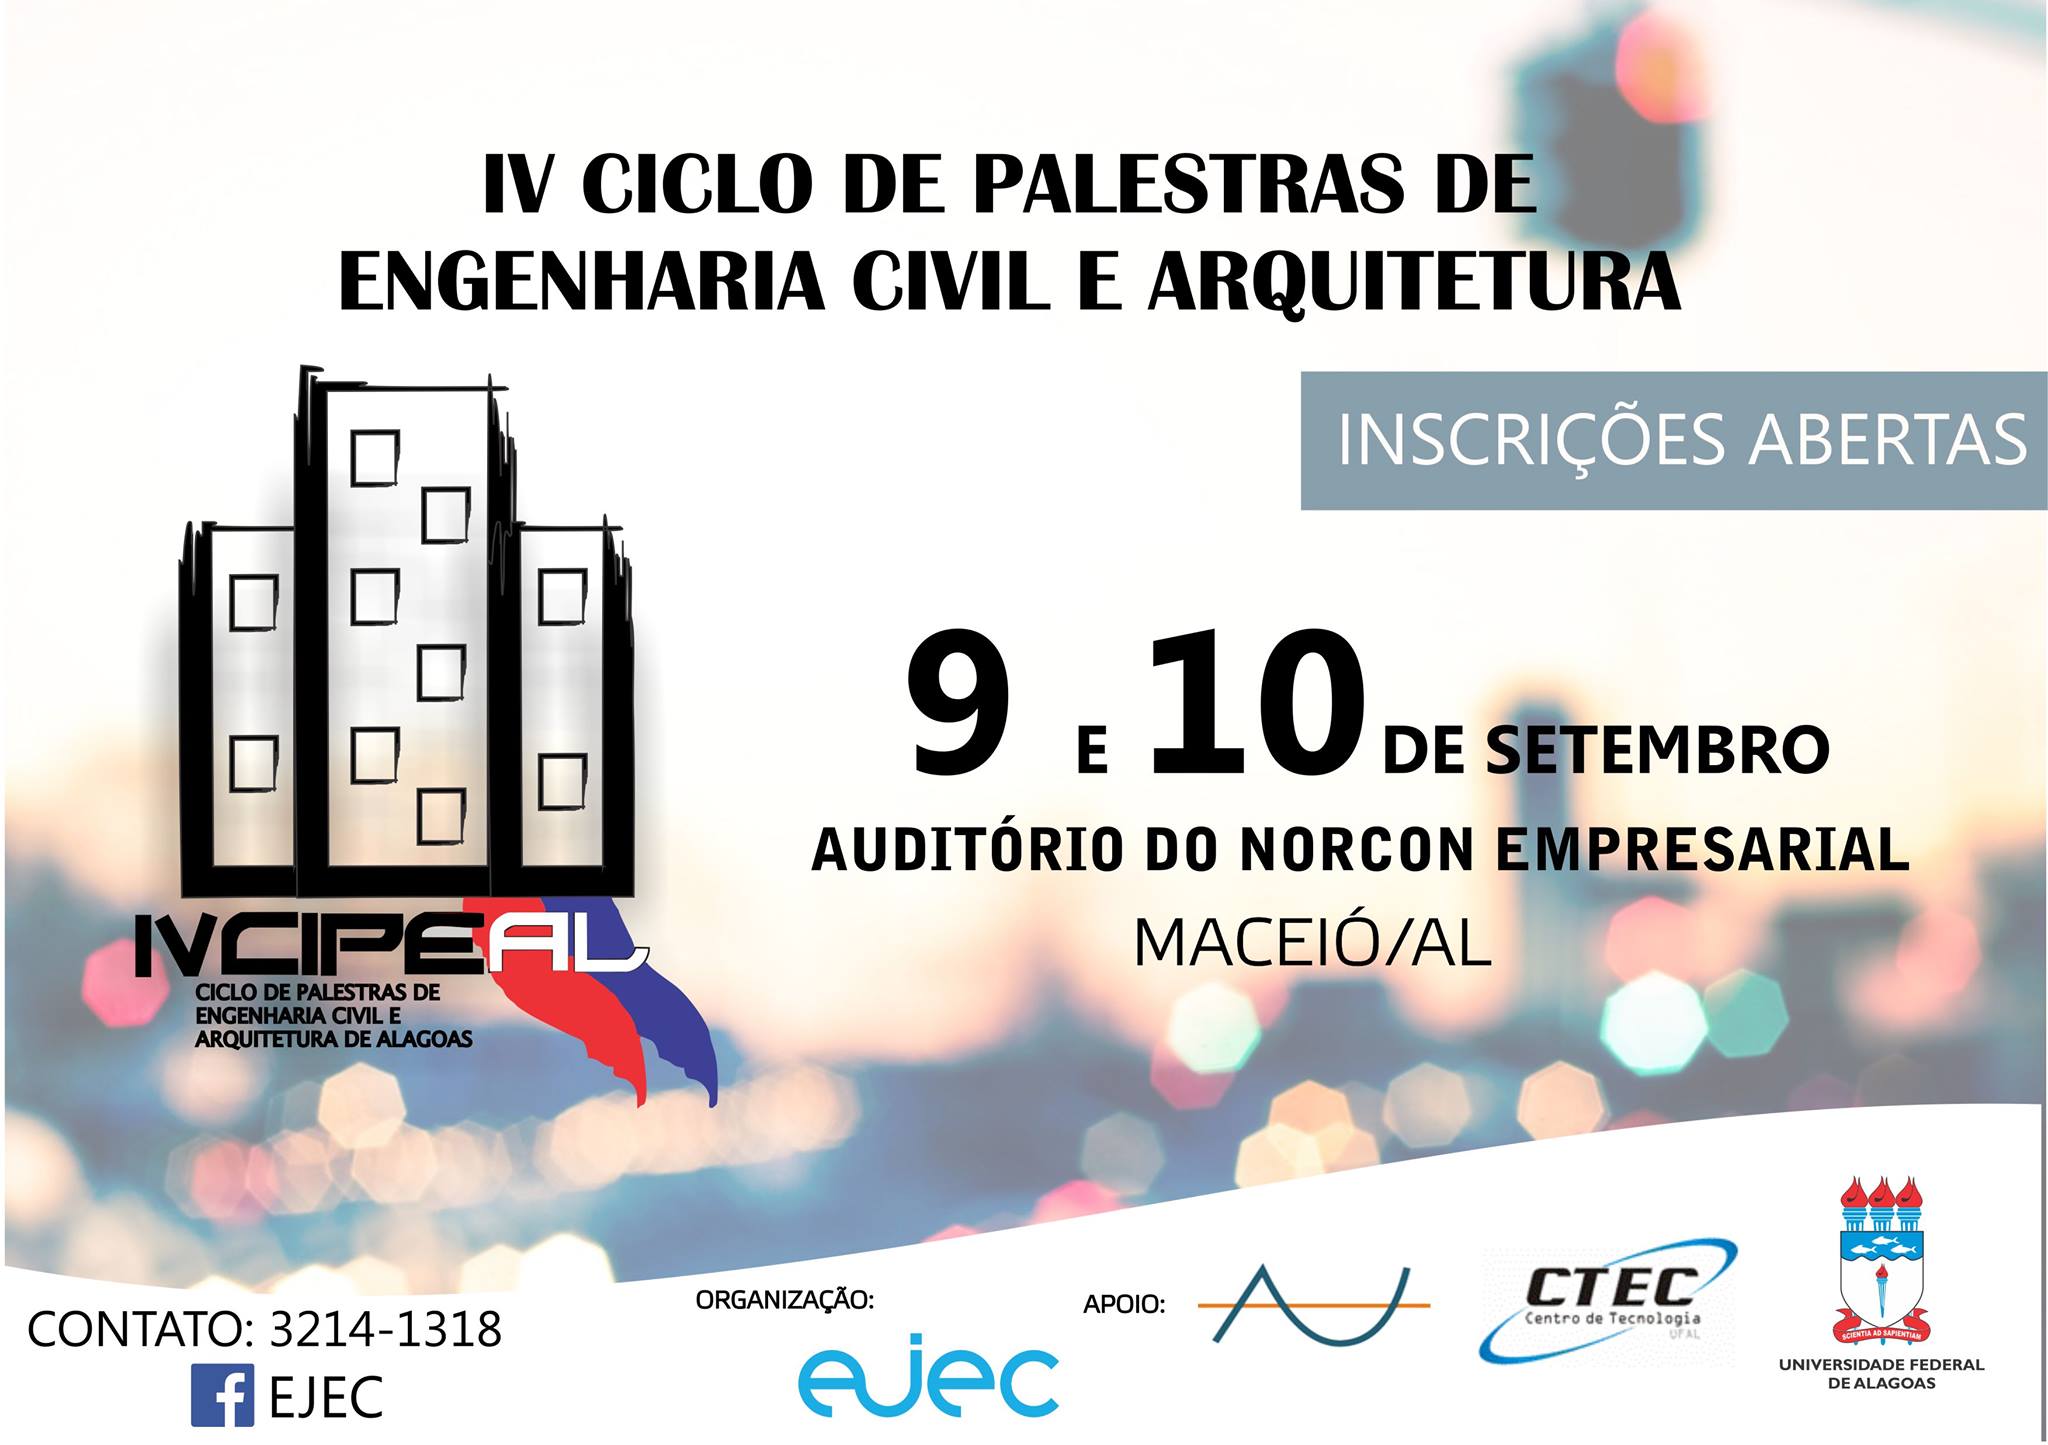 IV Ciclo de Palestras de Engenharia Civil e Arquitetura - CIPEAL